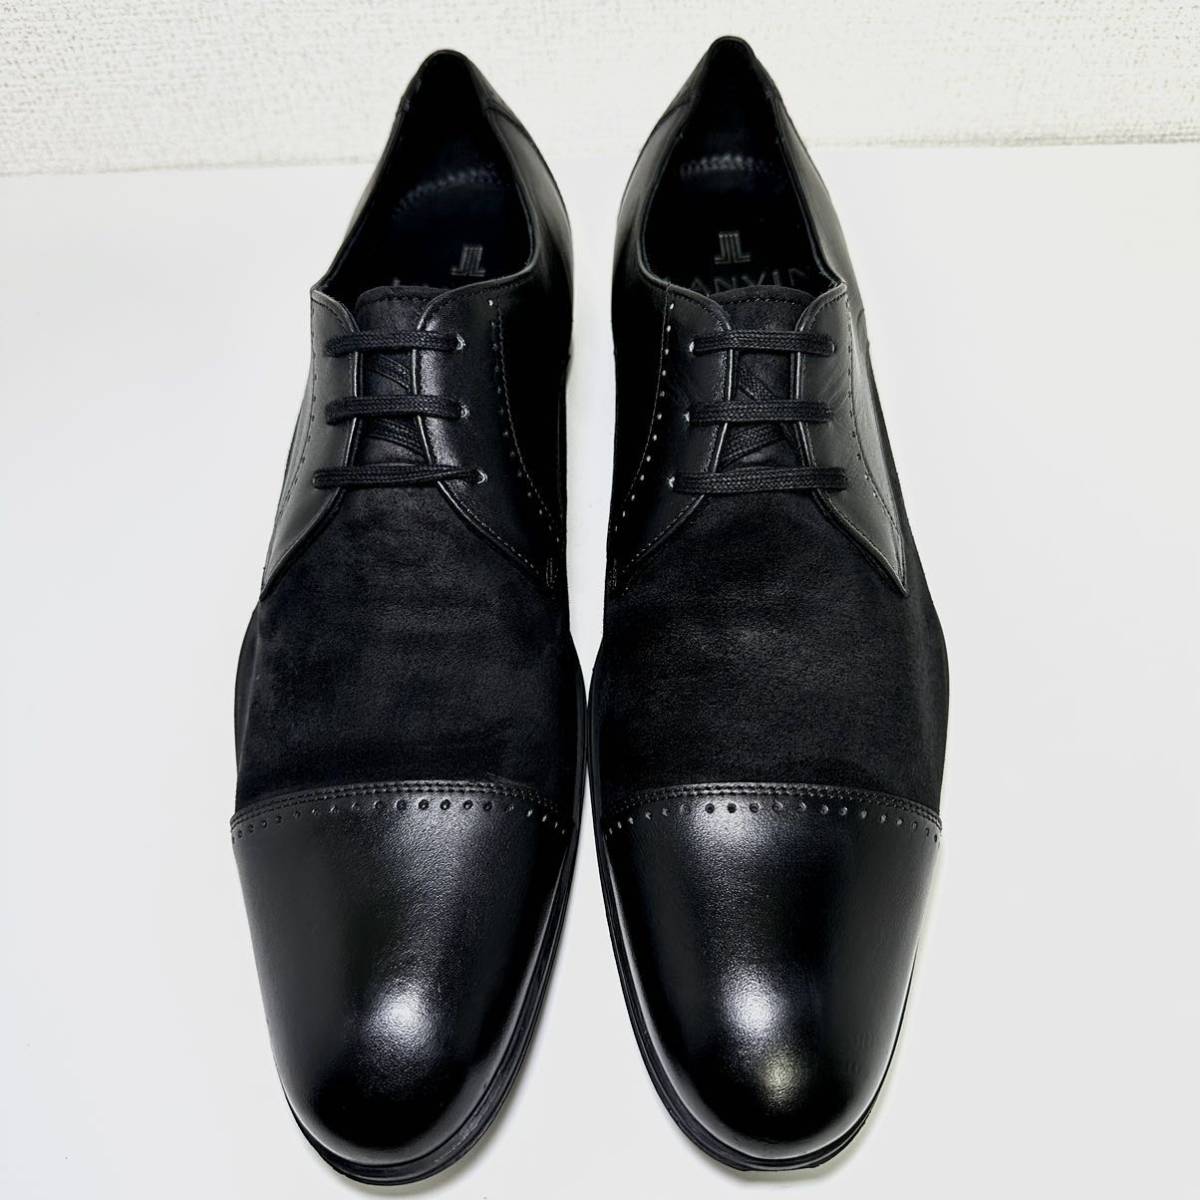 即決 美品/LANVIN COLLECTION 25.0cm ストレートチップ/ランバンコレクション メンズ 黒/ブラック/スエード/本革 ビジネス  革靴 紳士靴